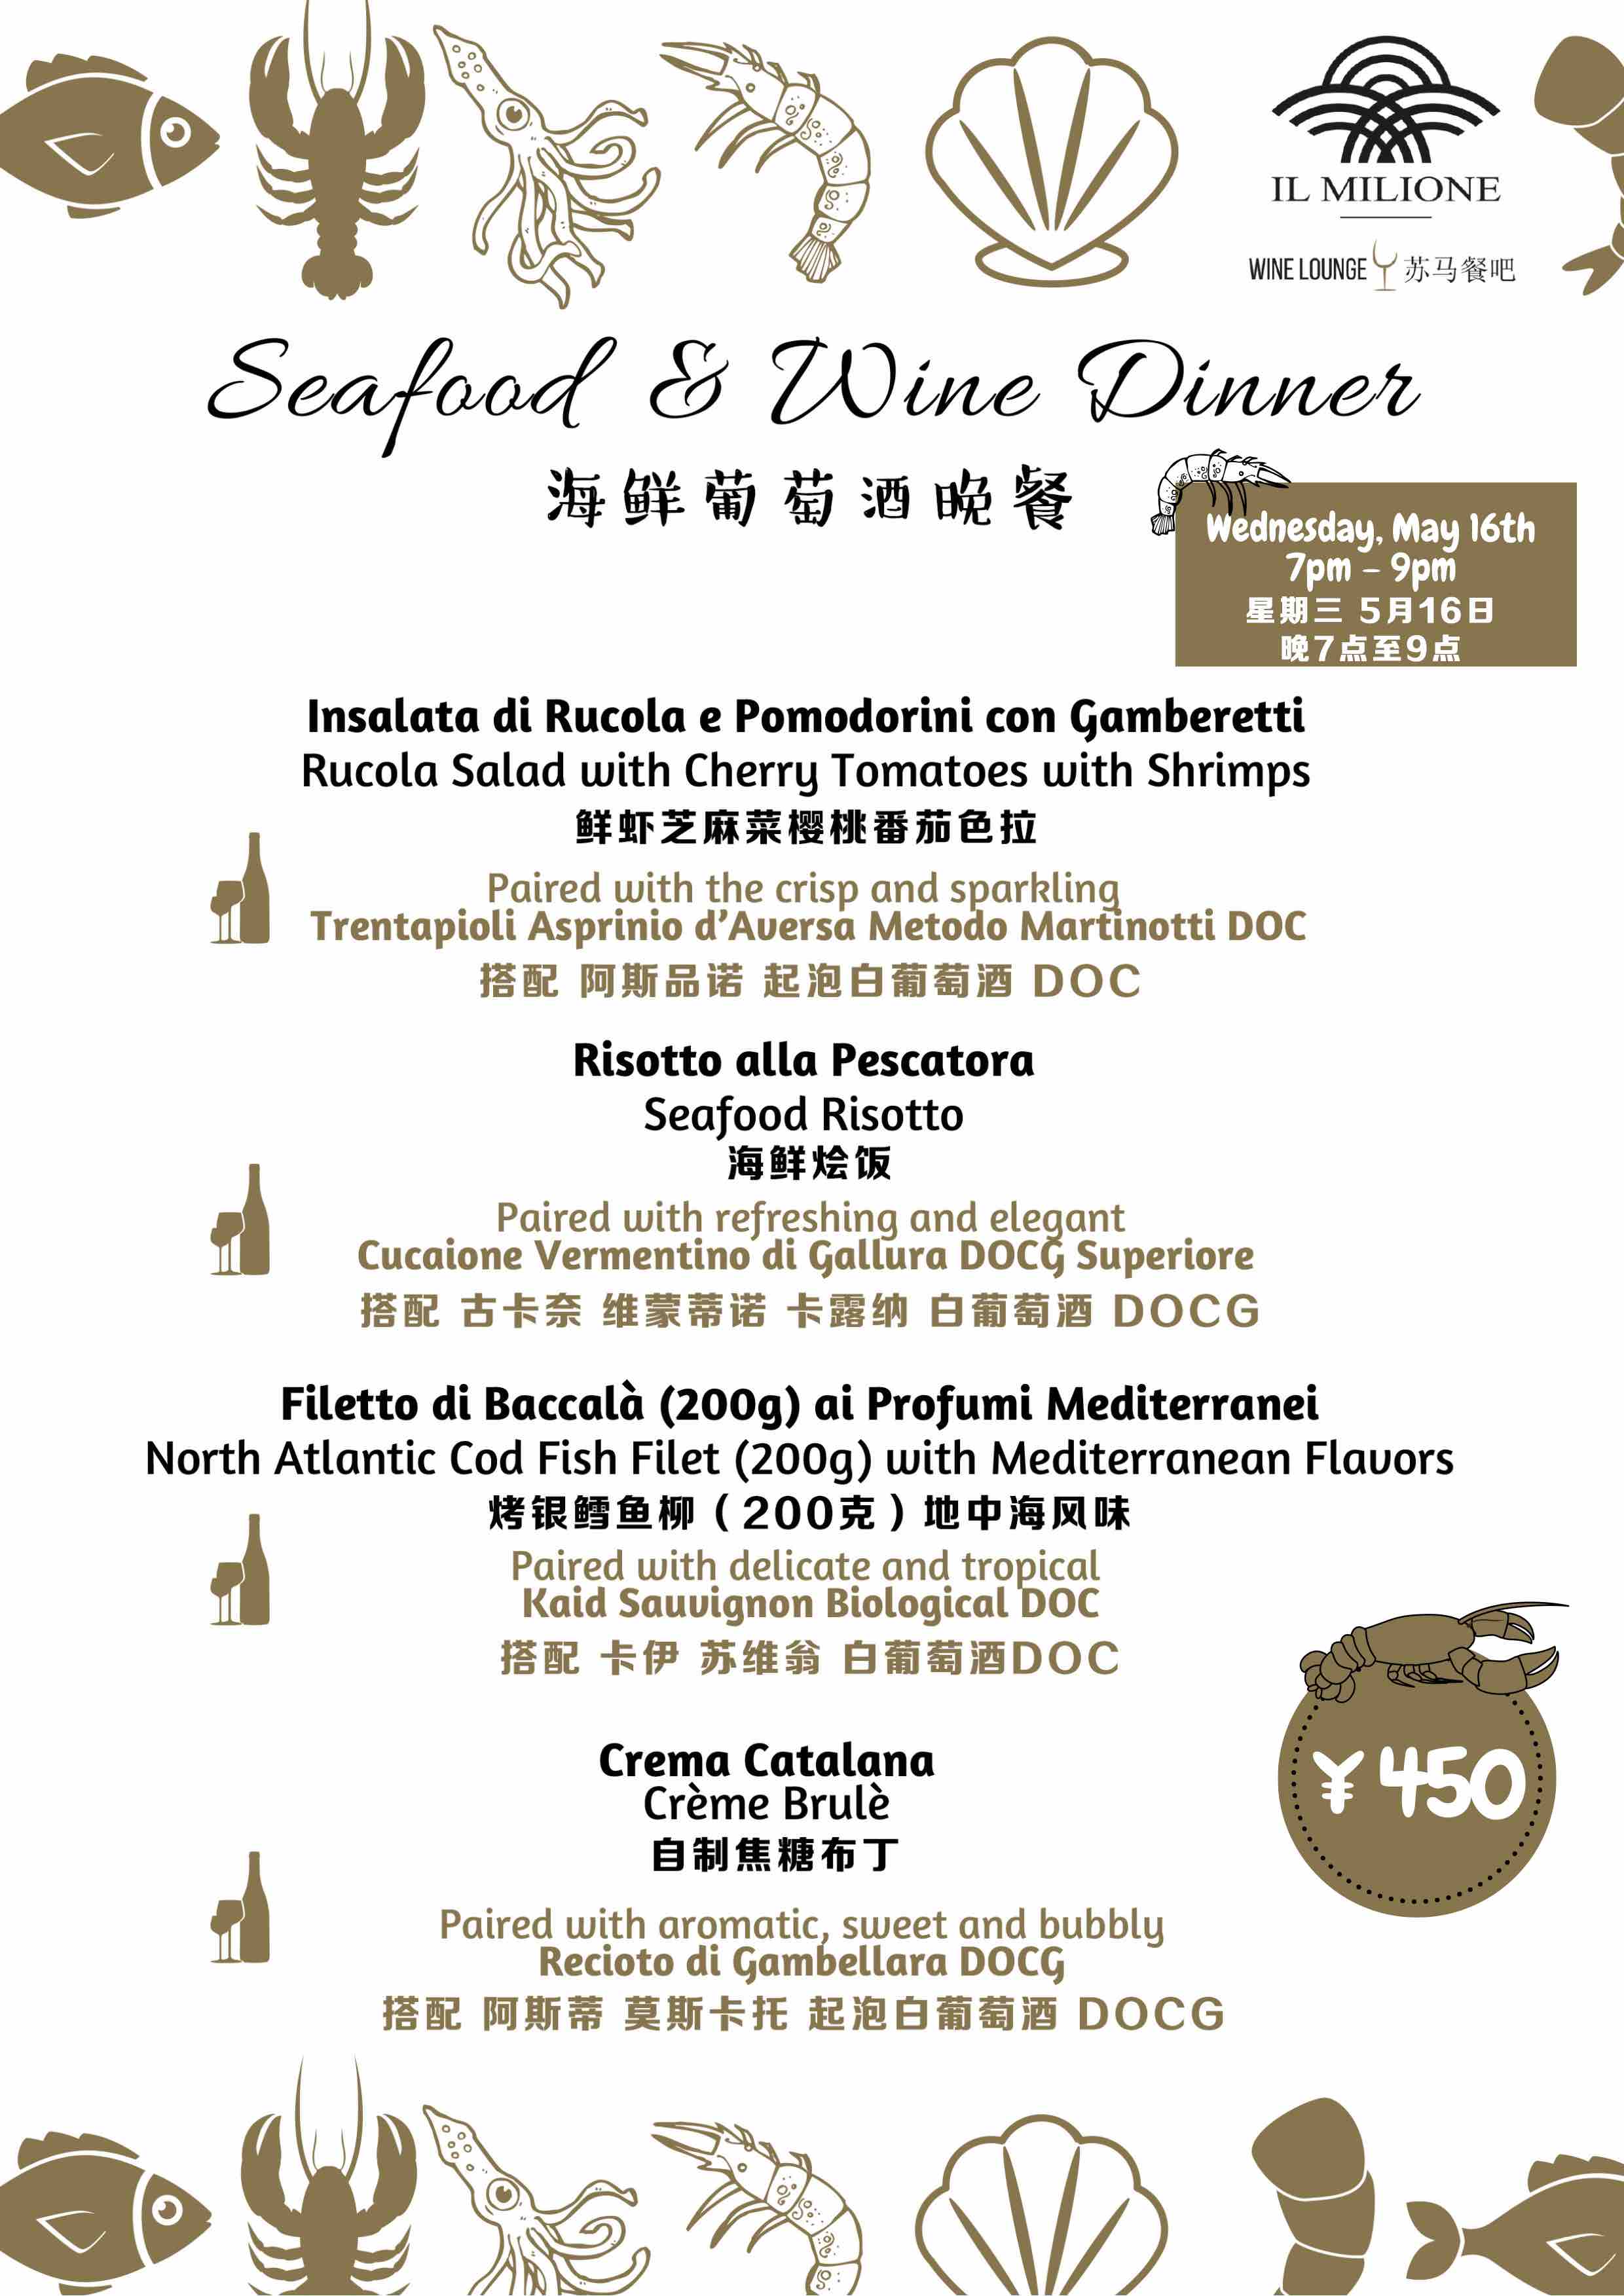 Seafood & Wine Dinner